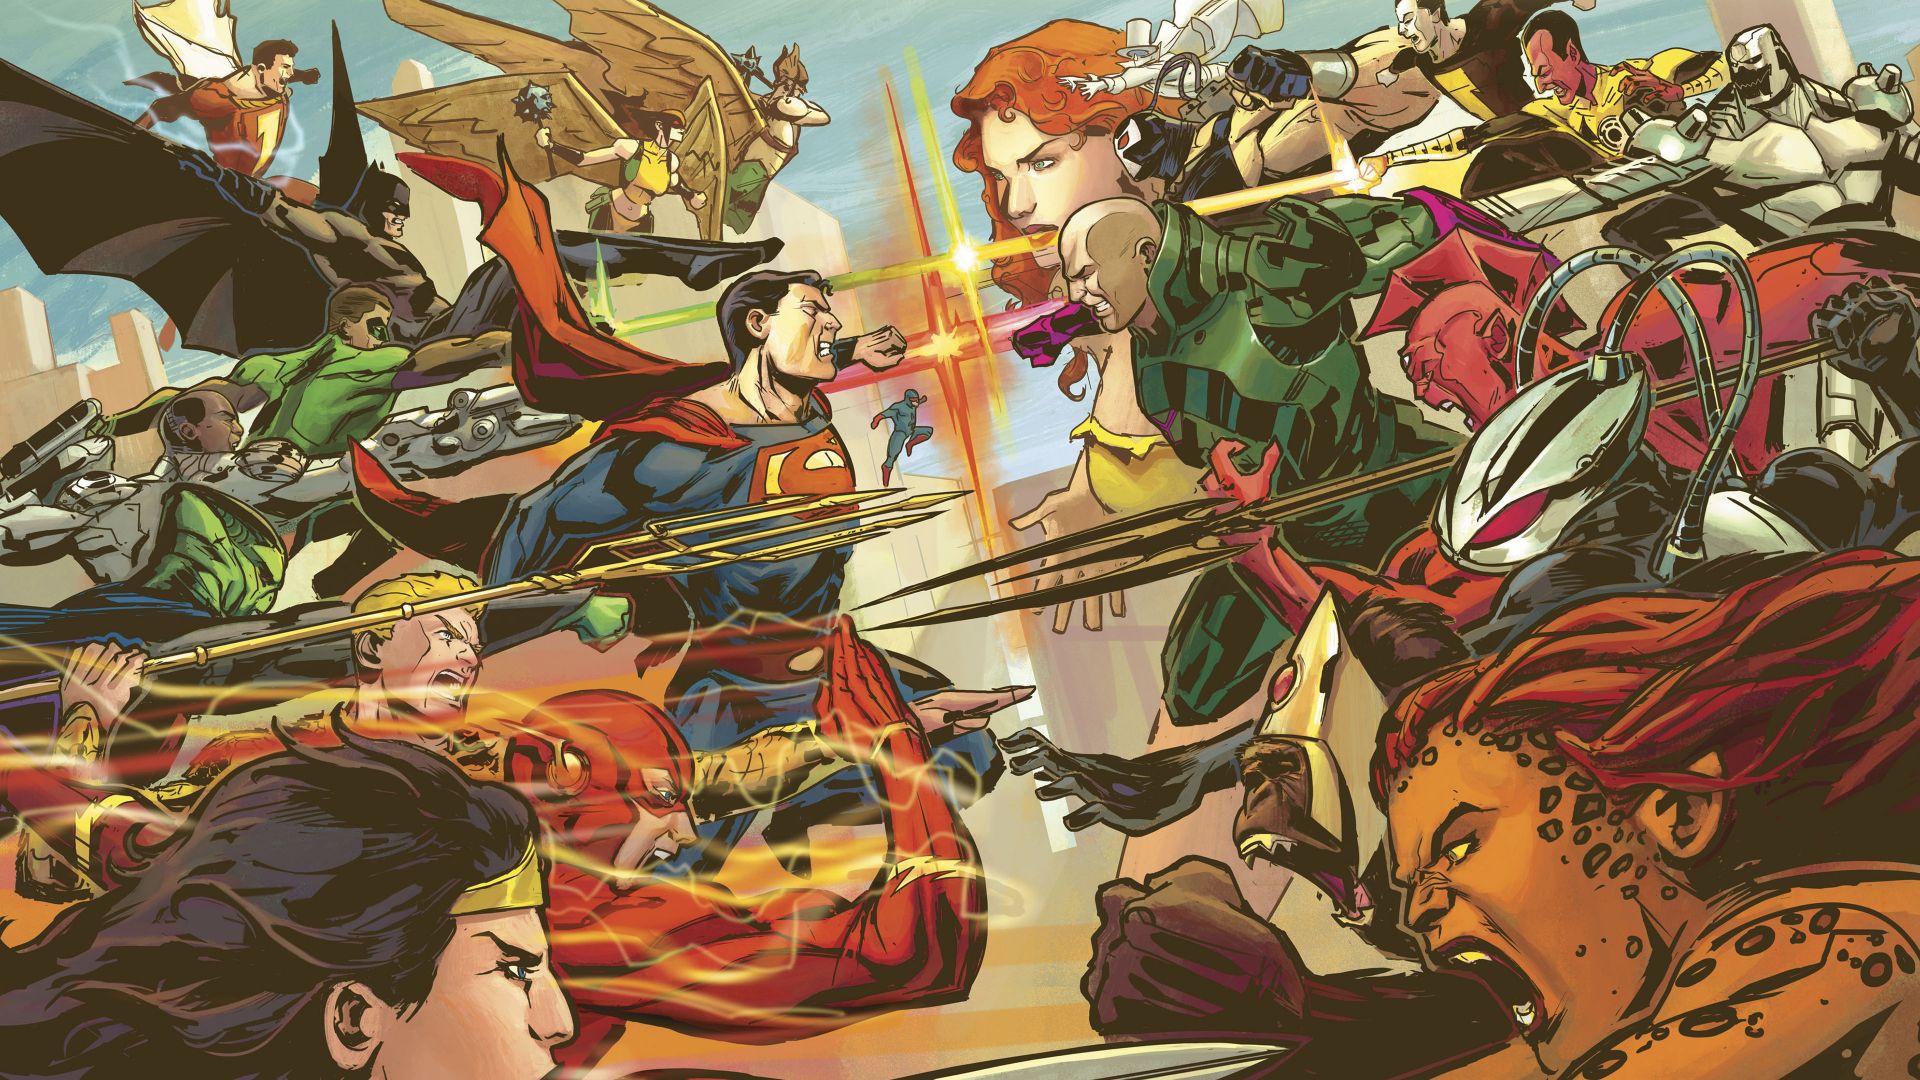 Justice league, superheroes vs villains, comics wallpaper, HD image, picture, background, b2984e